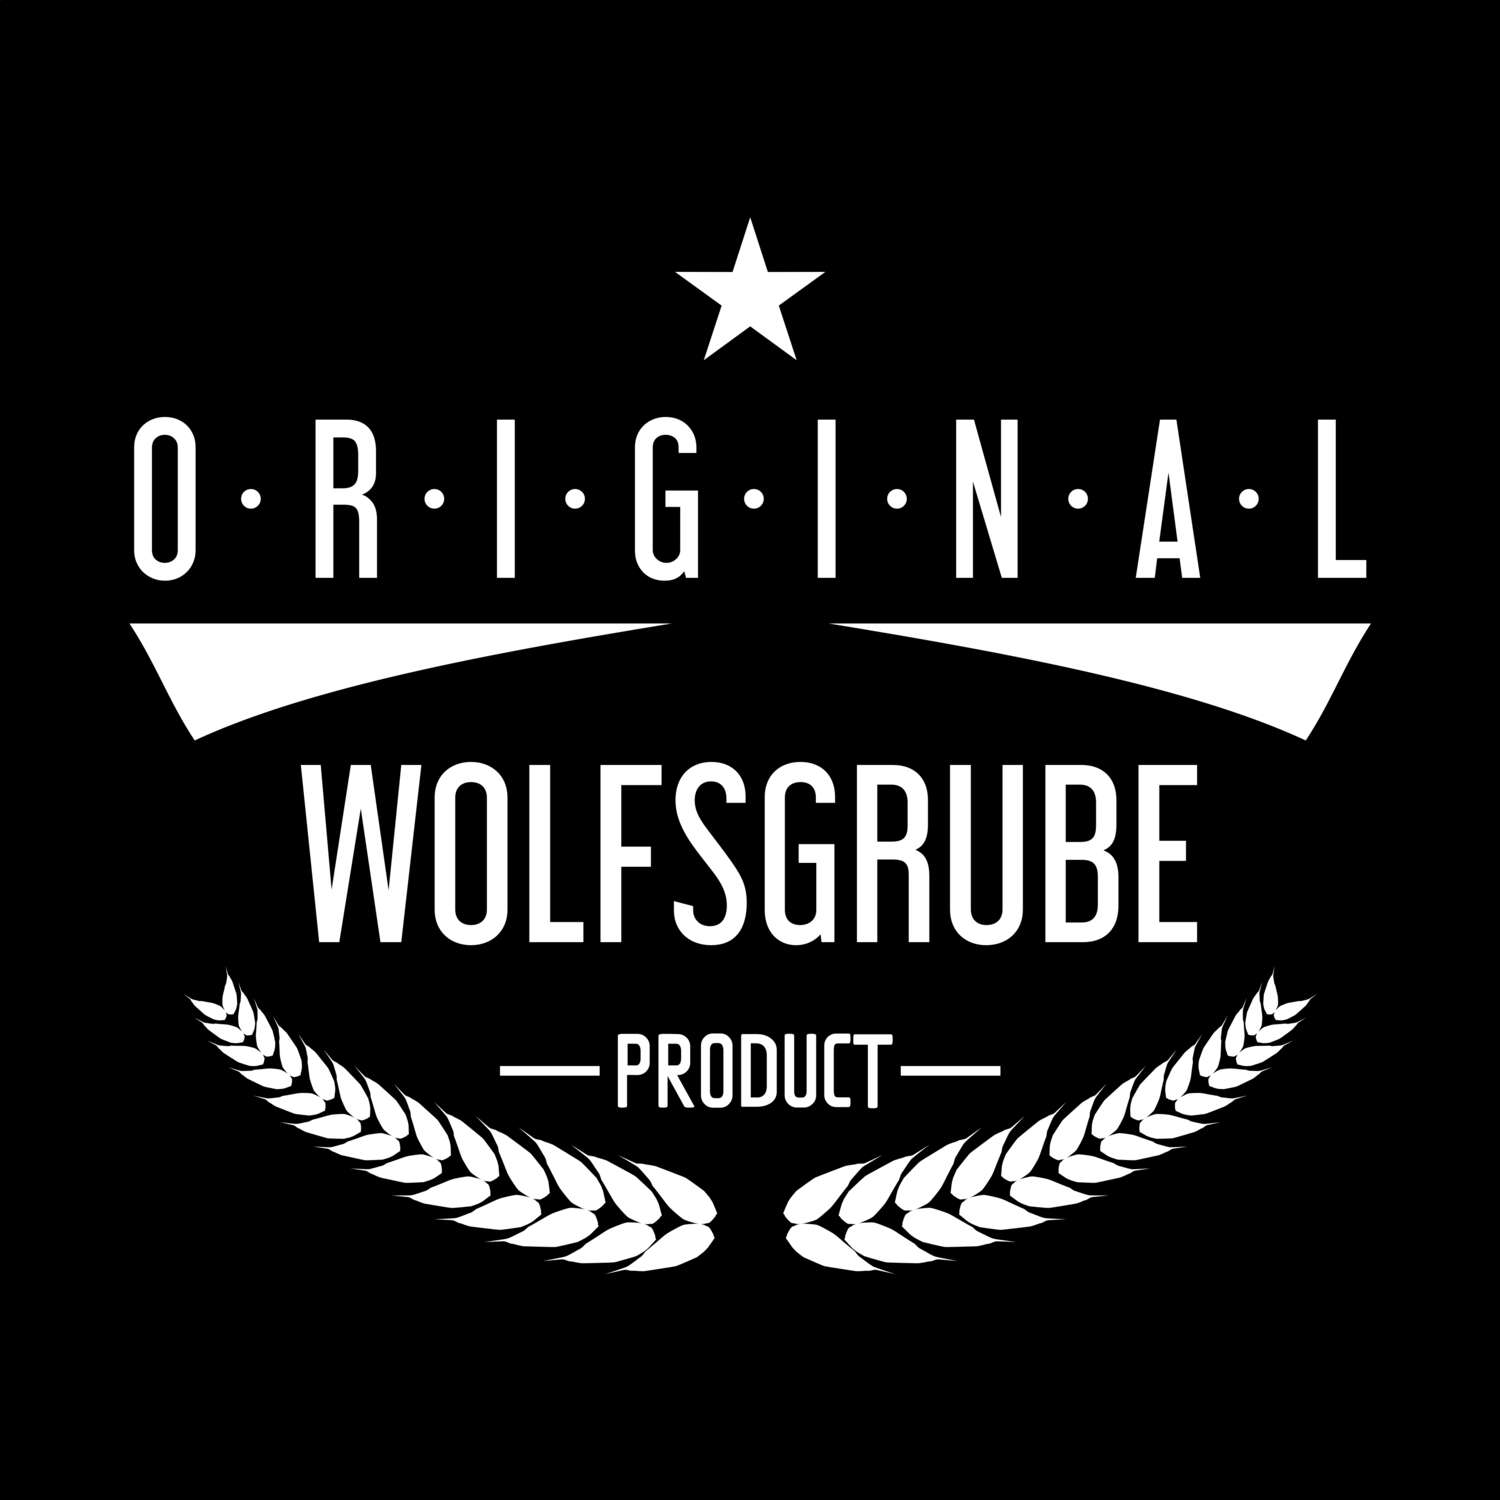 Wolfsgrube T-Shirt »Original Product«